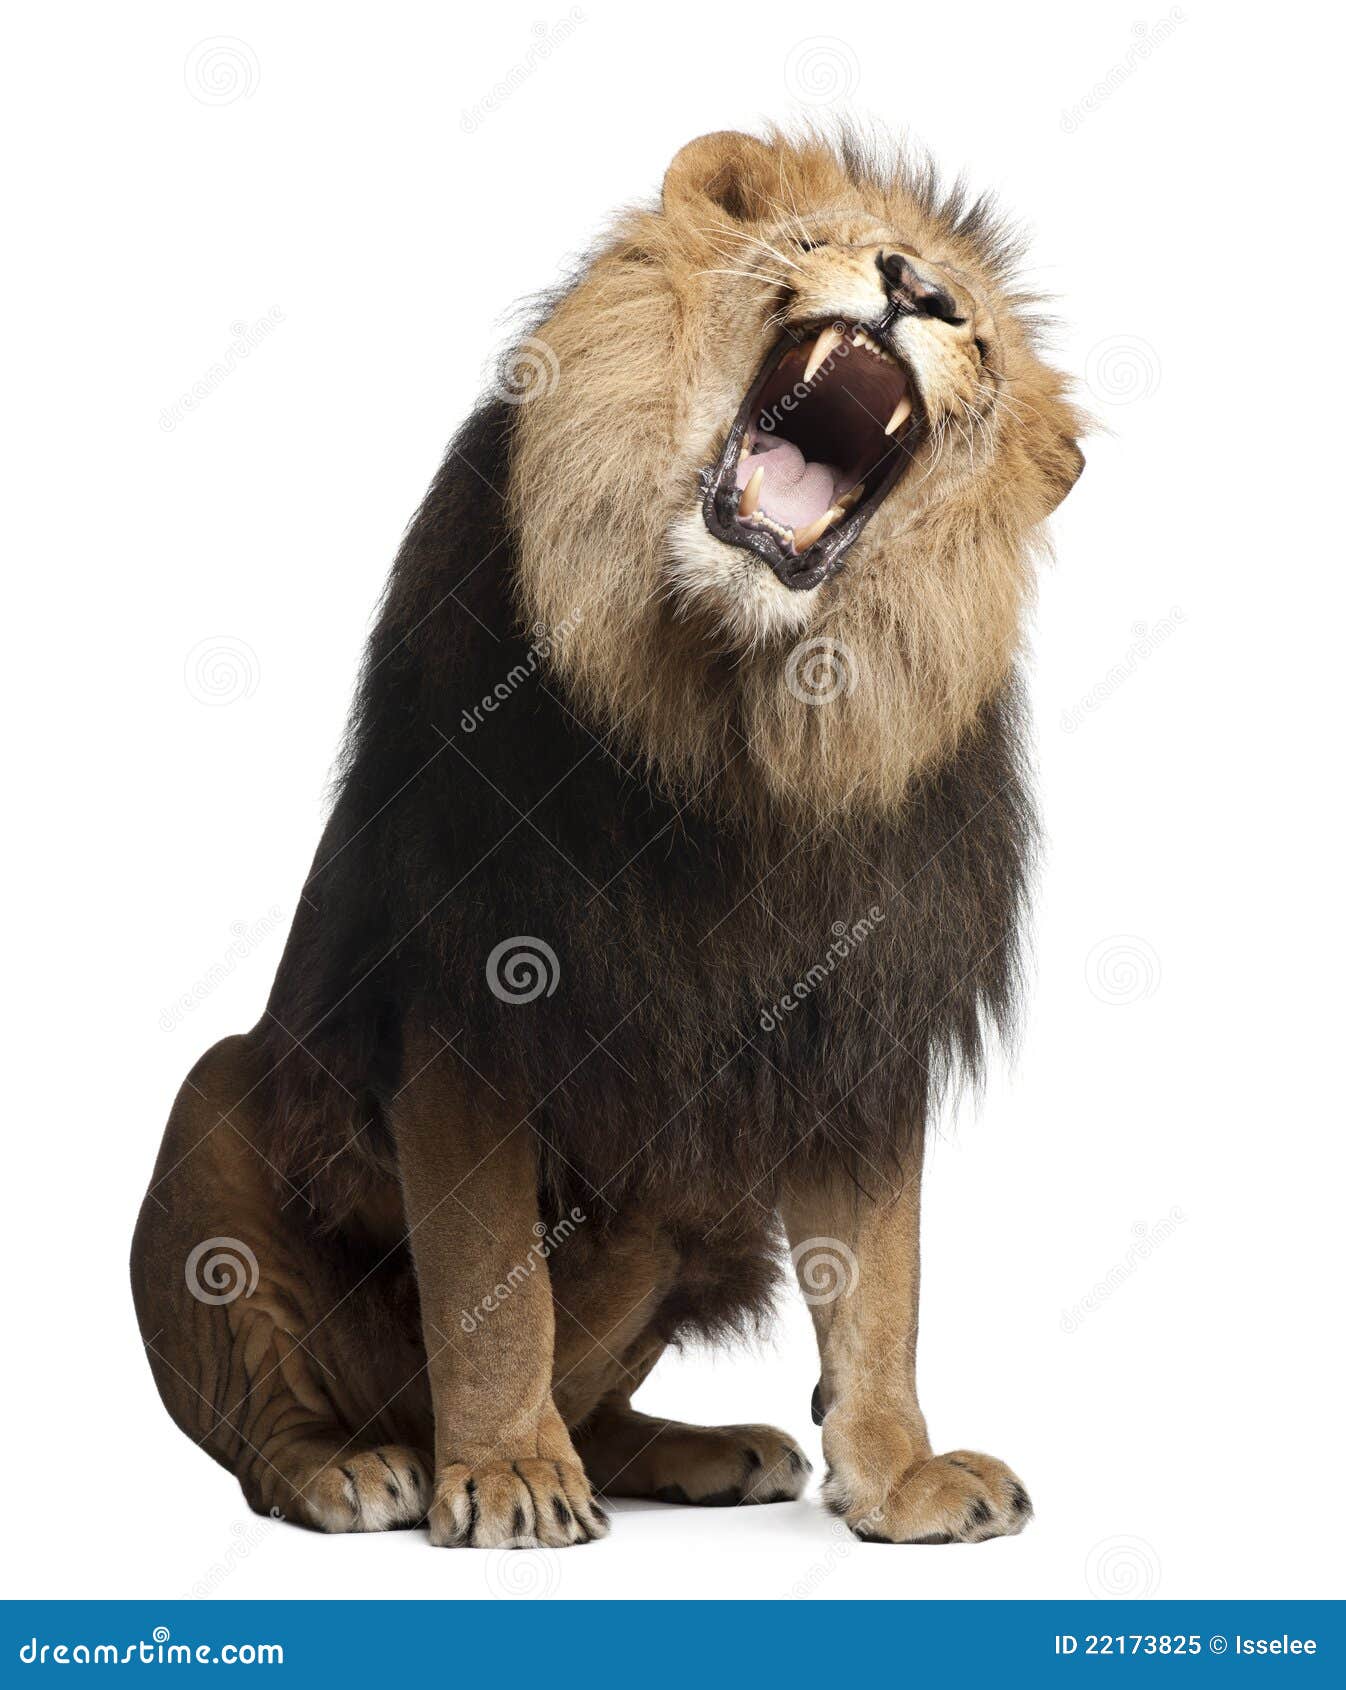 lion, panthera leo, 8 years old, roaring